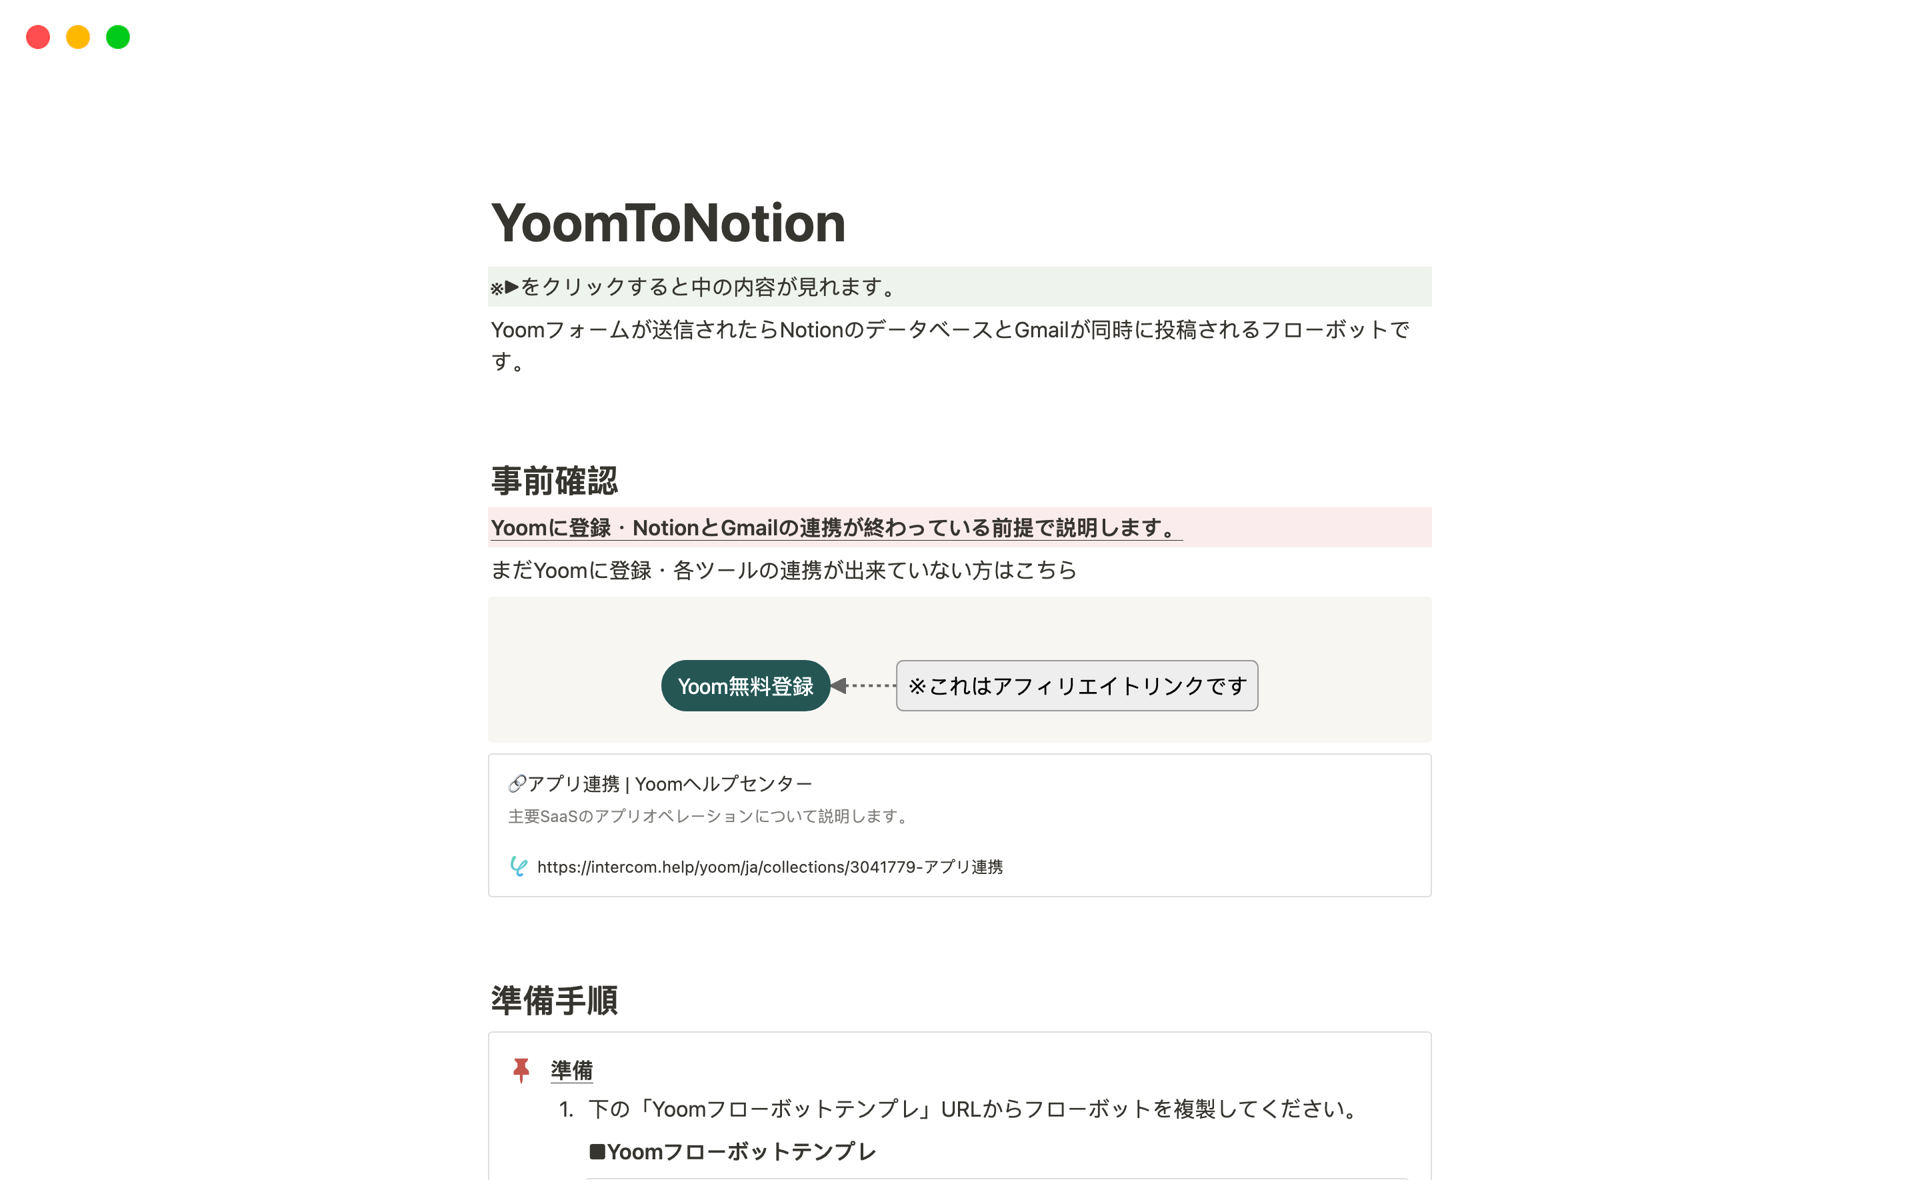 Eine Vorlagenvorschau für YoomToNotion